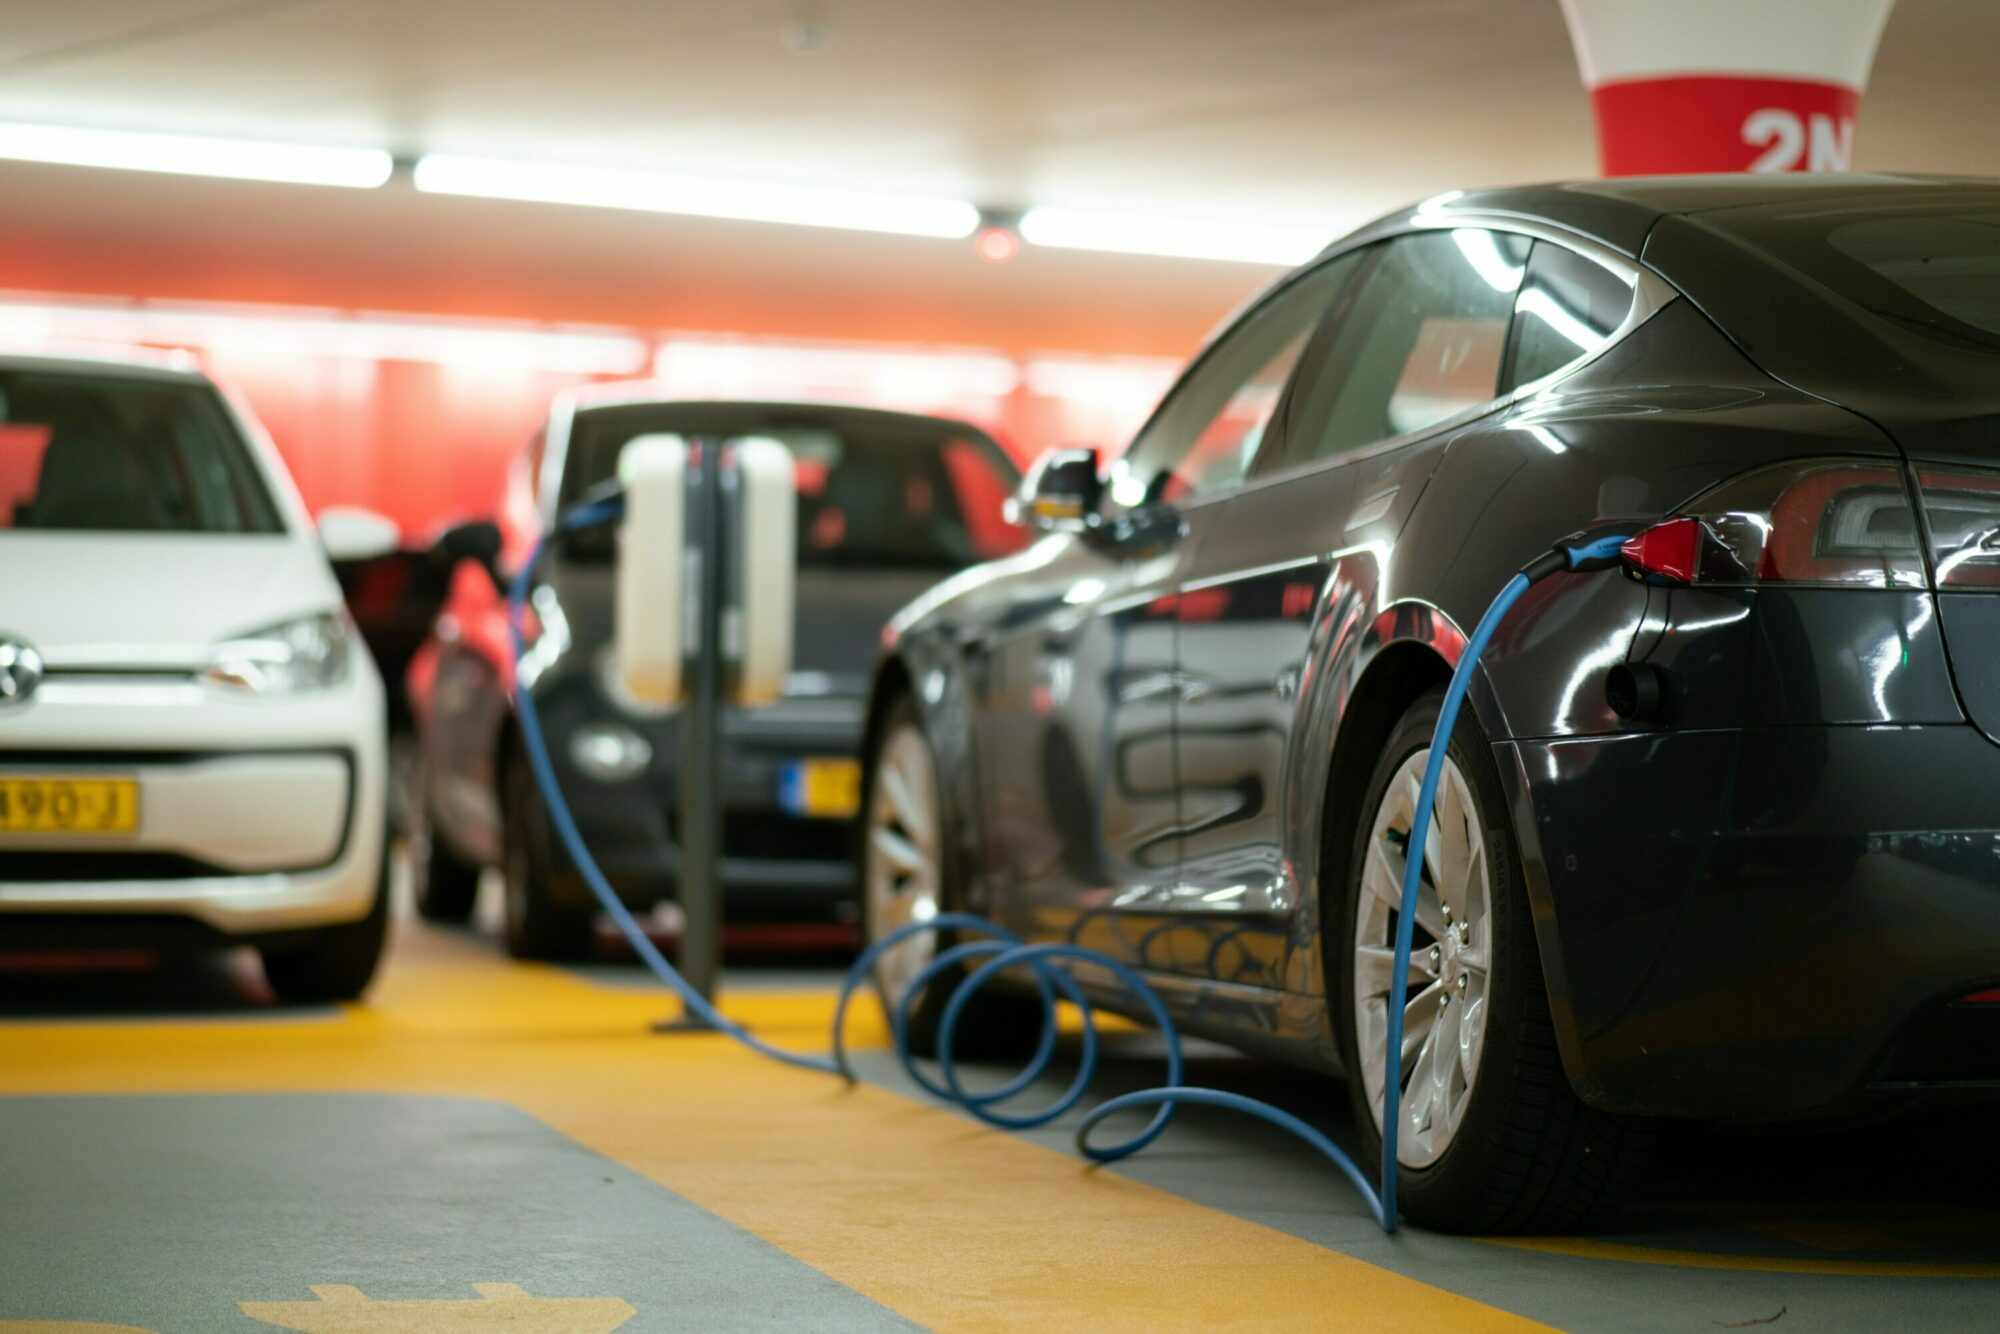 Obligaciones para instalar puntos de recarga y normativa sobre servicios de recarga de vehículos eléctricos